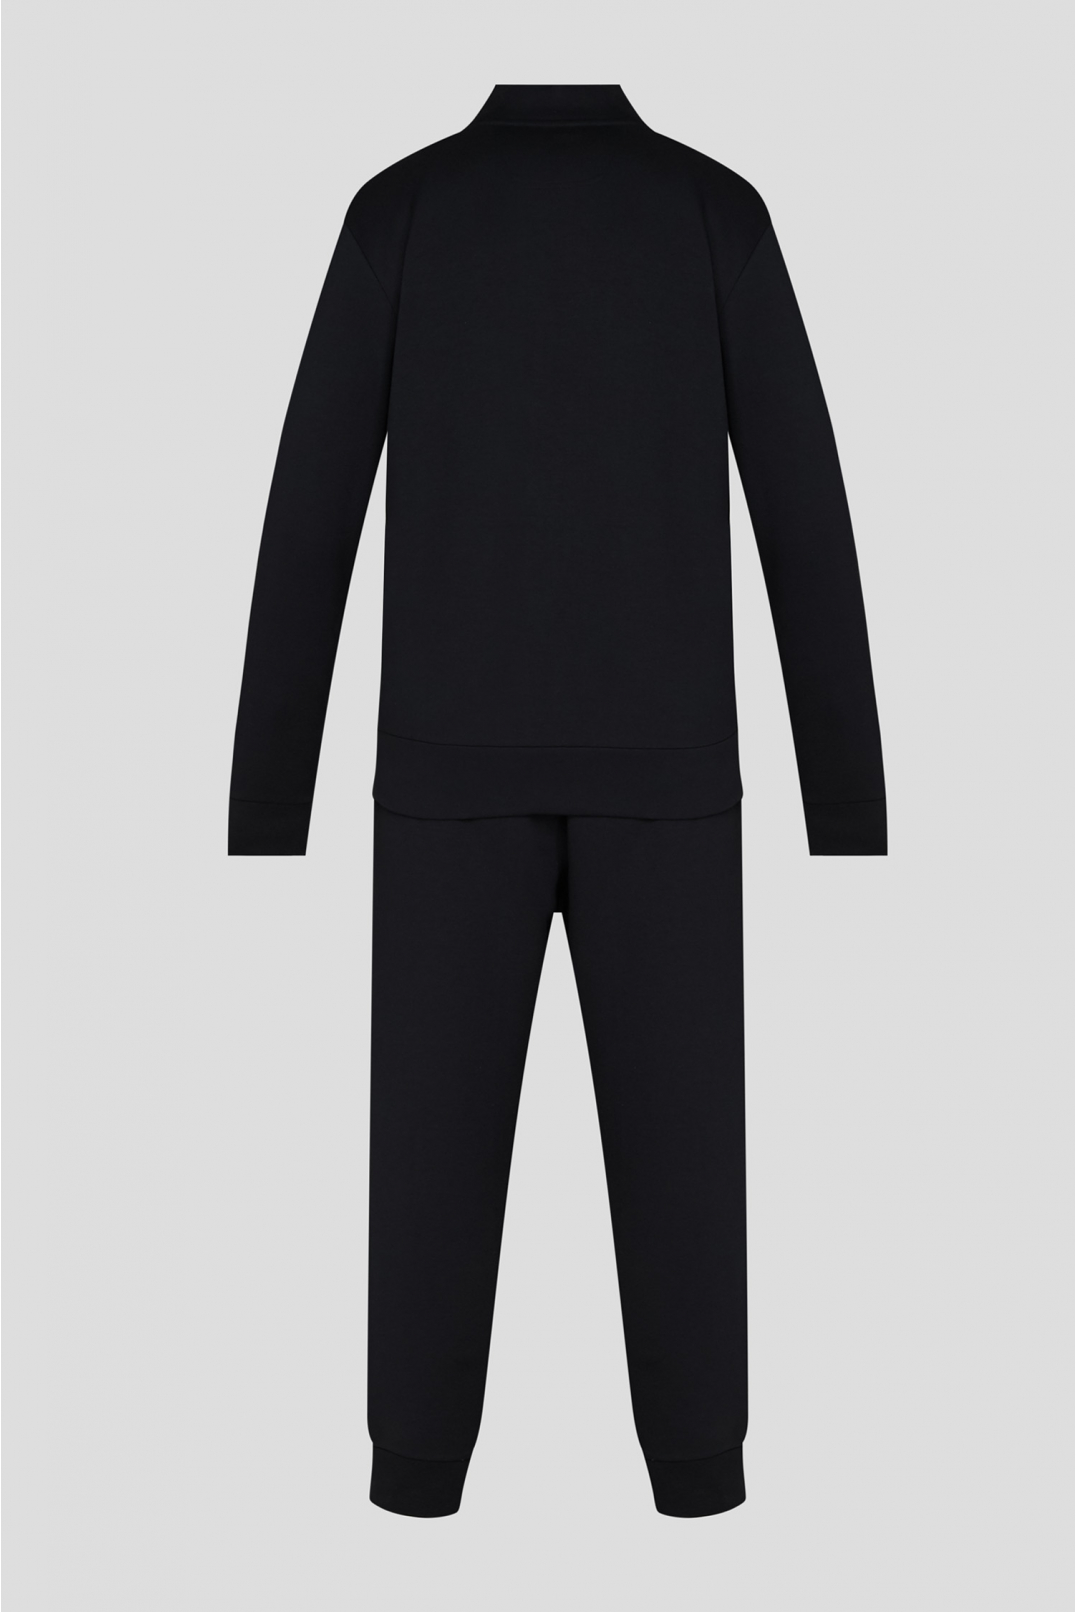 Мужской черный спортивный костюм (кофта, брюки) - 2